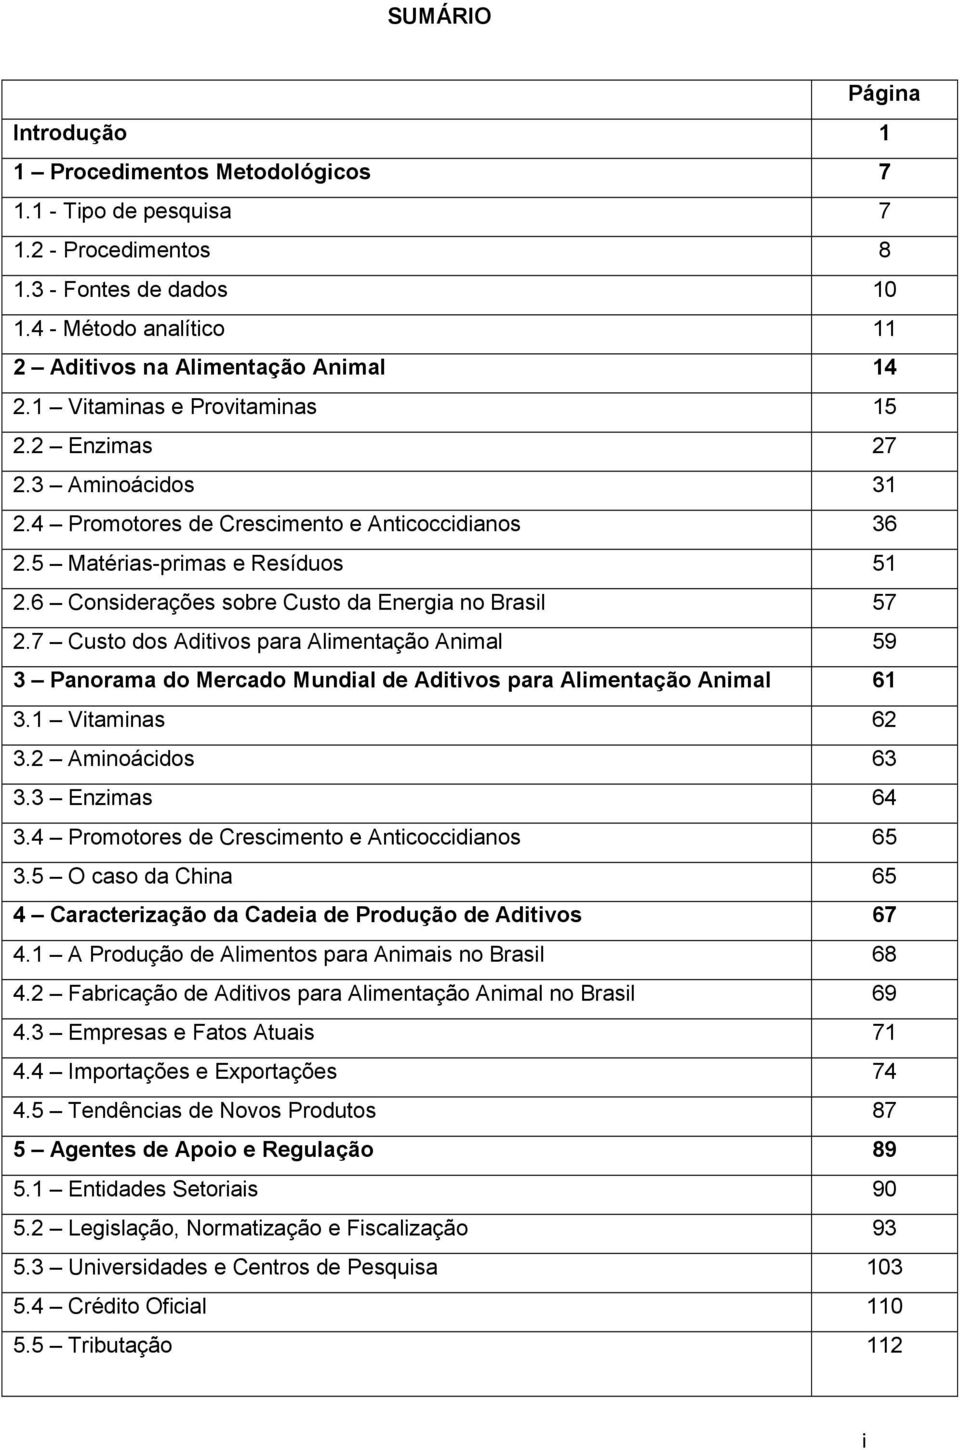 6 Considerações sobre Custo da Energia no Brasil 57 2.7 Custo dos Aditivos para Alimentação Animal 59 3 Panorama do Mercado Mundial de Aditivos para Alimentação Animal 61 3.1 Vitaminas 62 3.